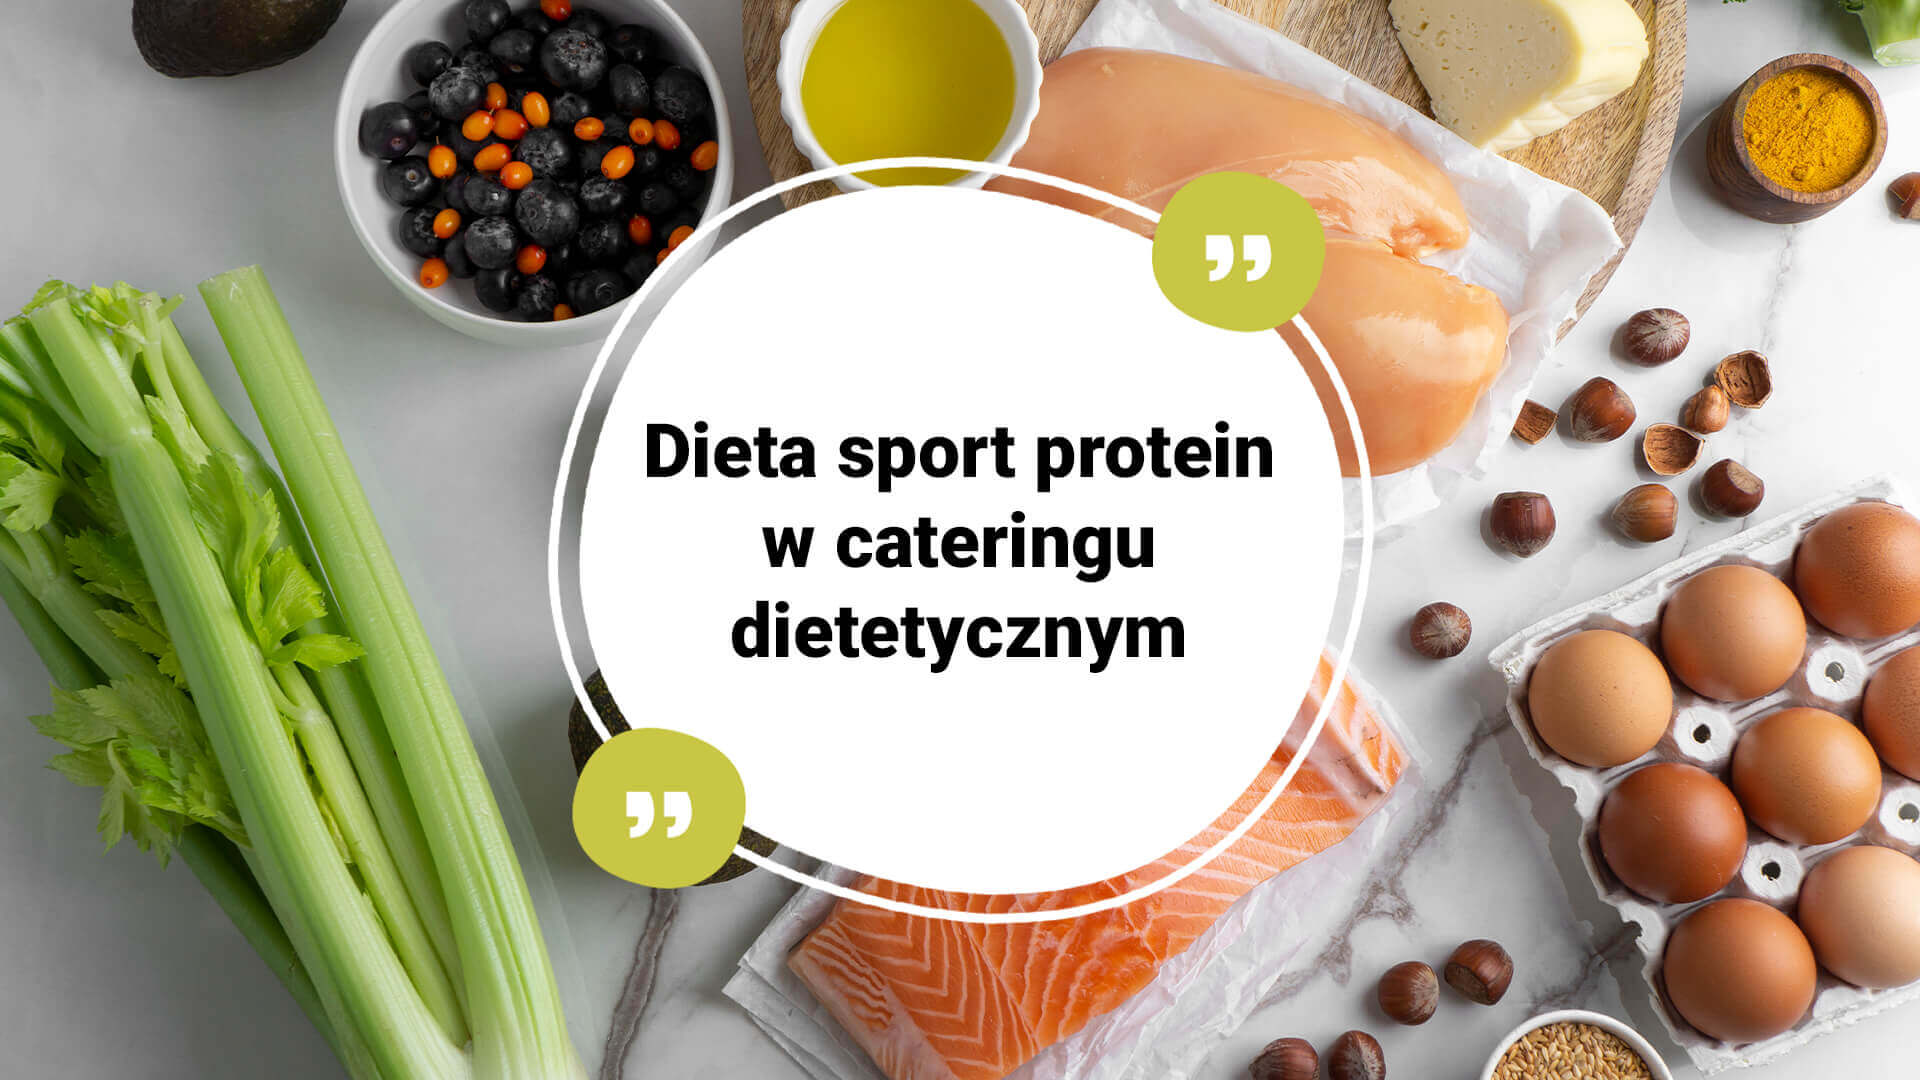 Dieta sport protein - catering dietetyczny dla sportowców